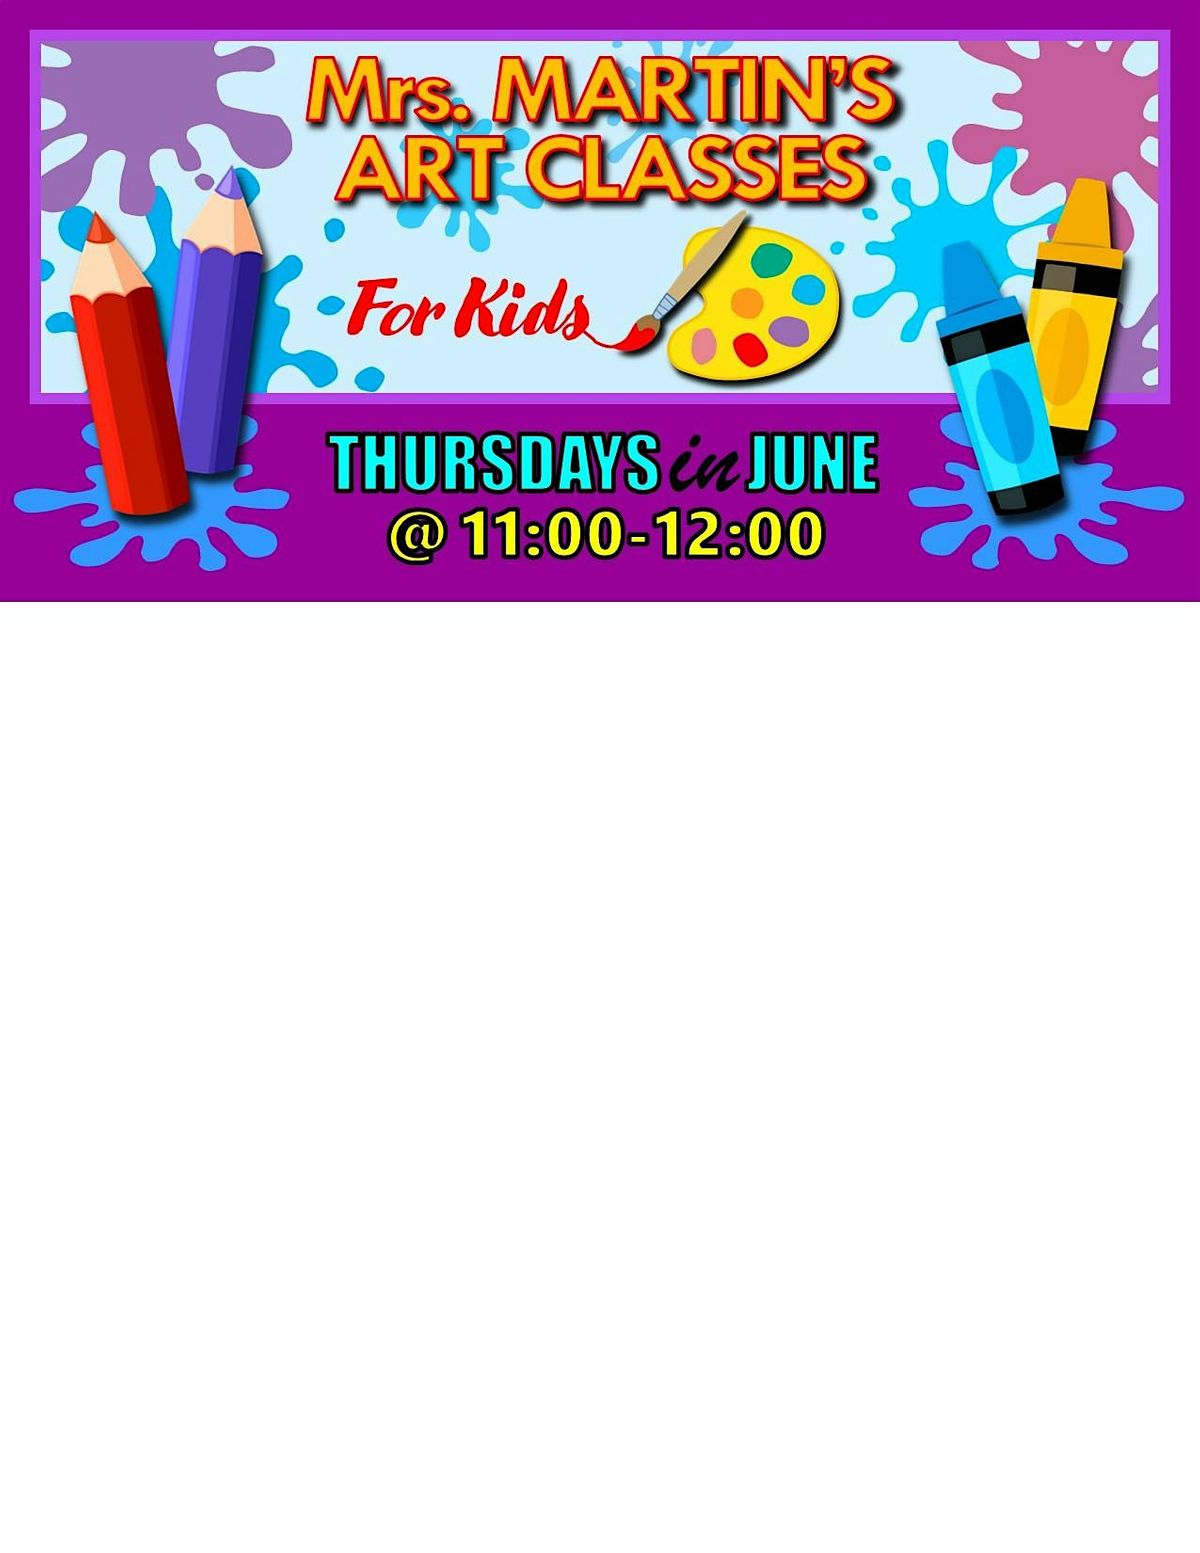 Mrs. Martin's Art Classes in JUNE ~Thursdays @11:00-12:00